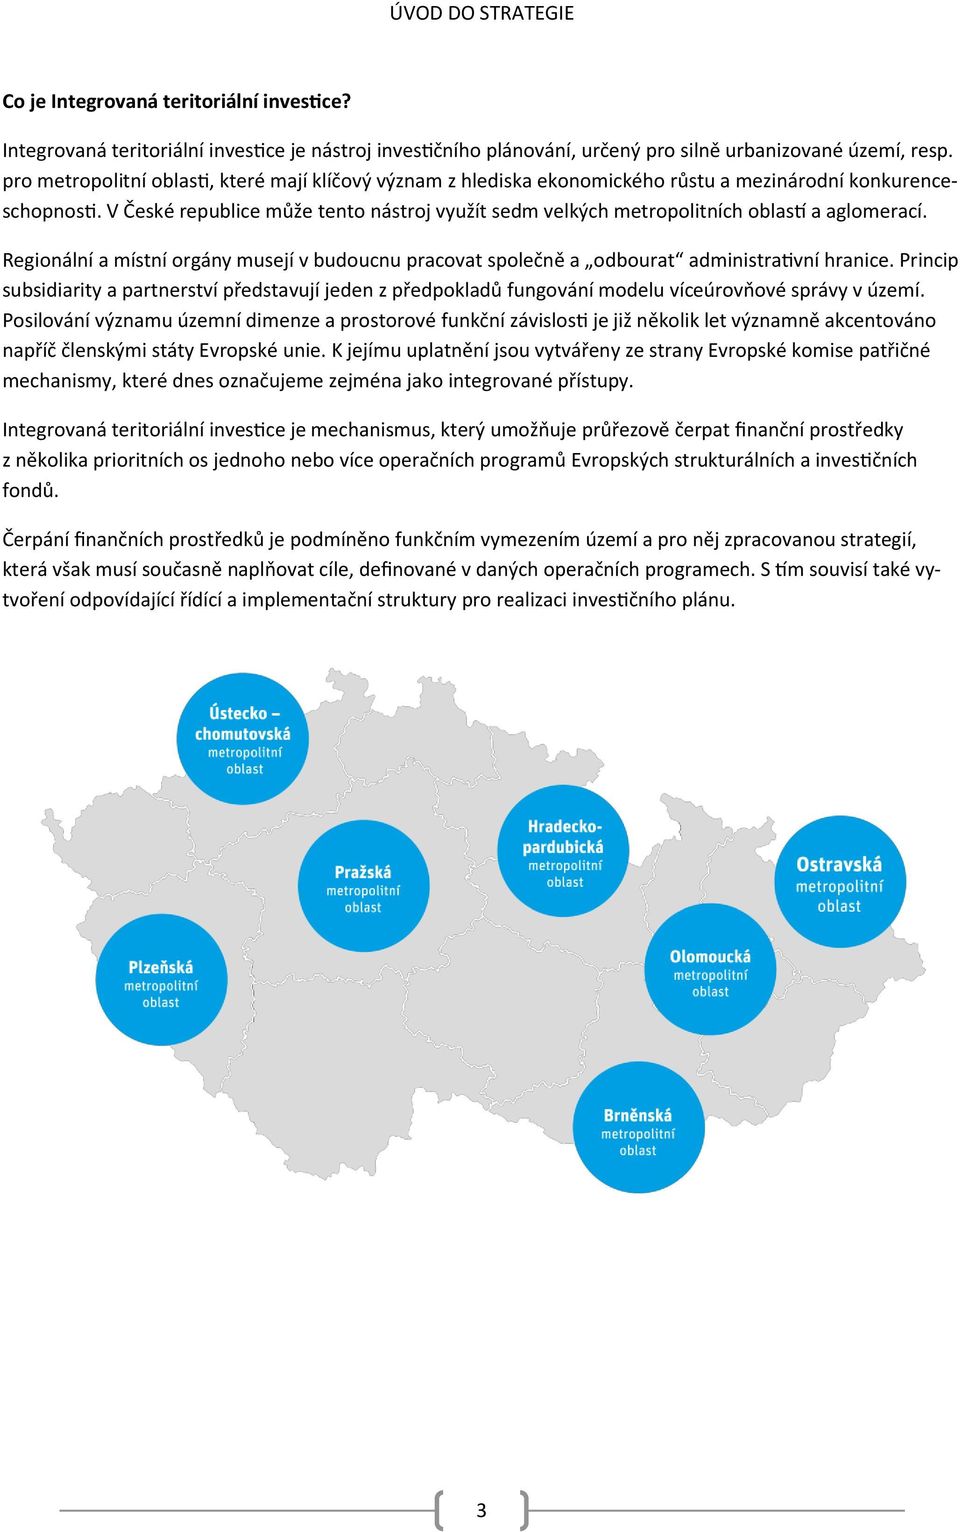 V České republice může tento nástroj využít sedm velkých metropolitních oblastí a aglomerací. Regionální a místní orgány musejí v budoucnu pracovat společně a odbourat administrativní hranice.